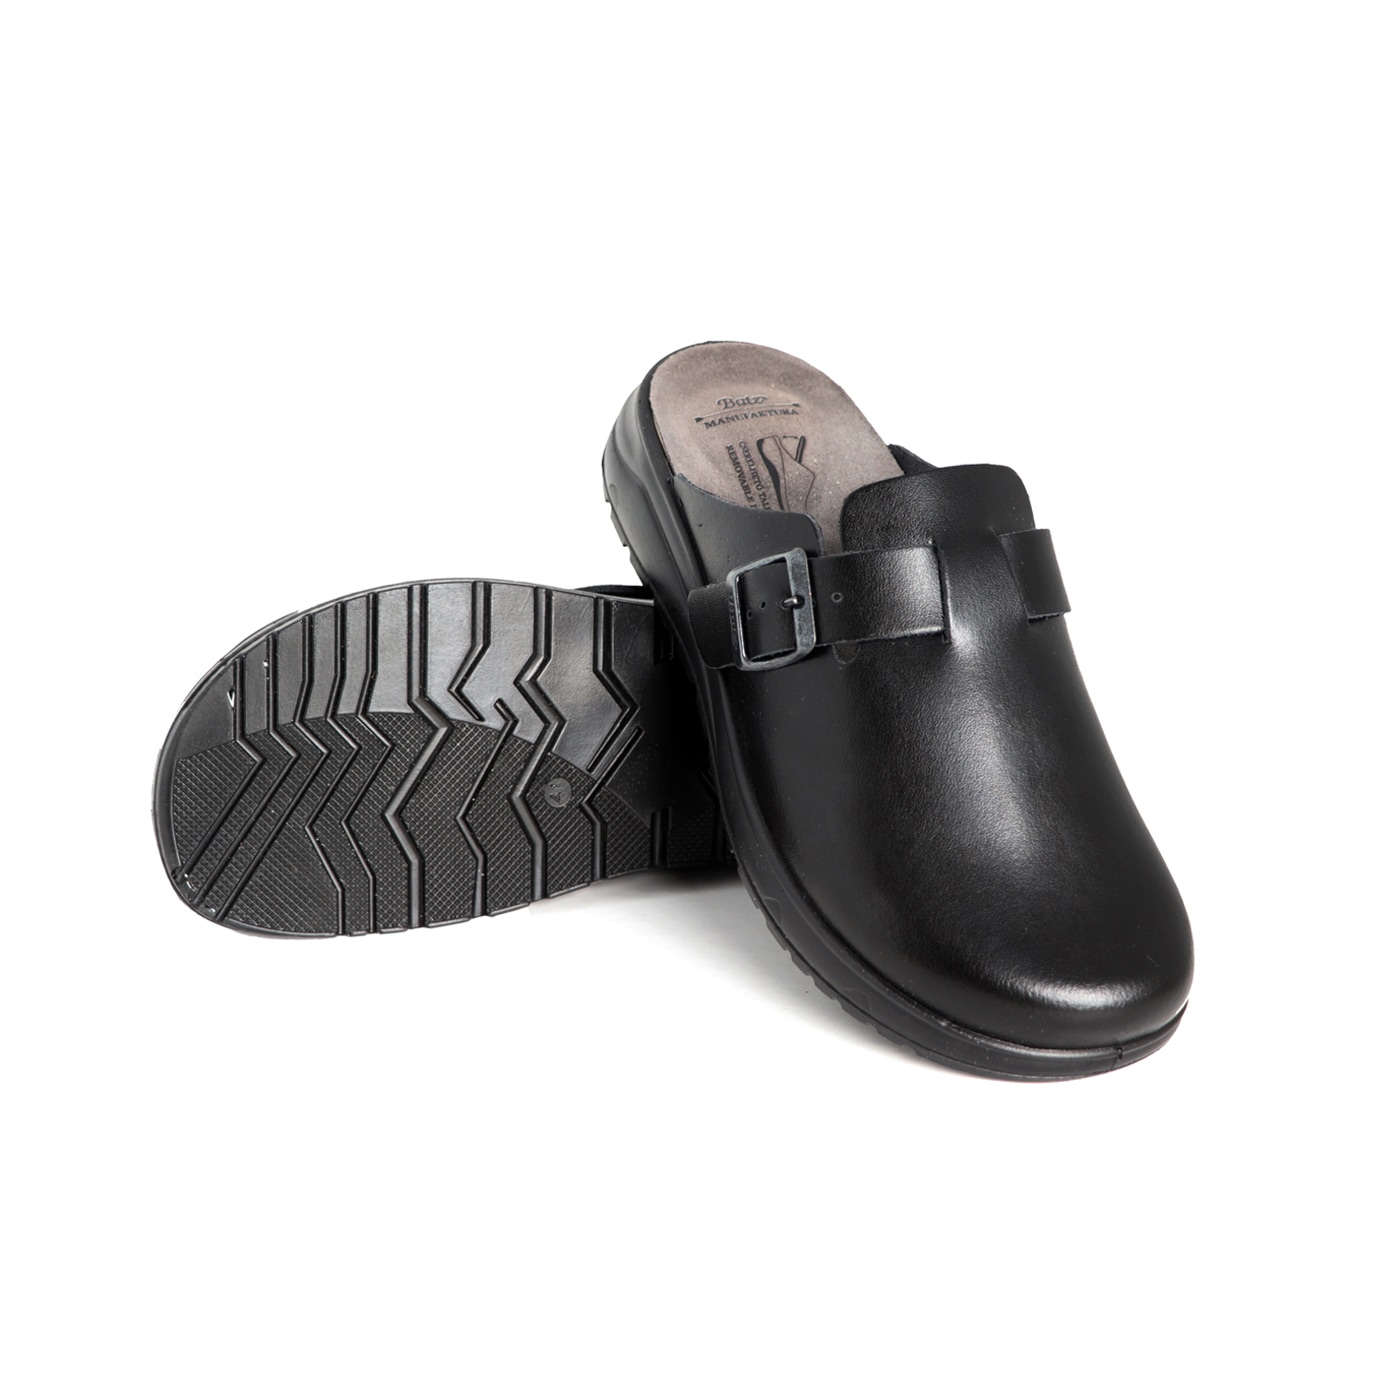 Zdravotní pantofle BATZ ruční výroba - Mark black